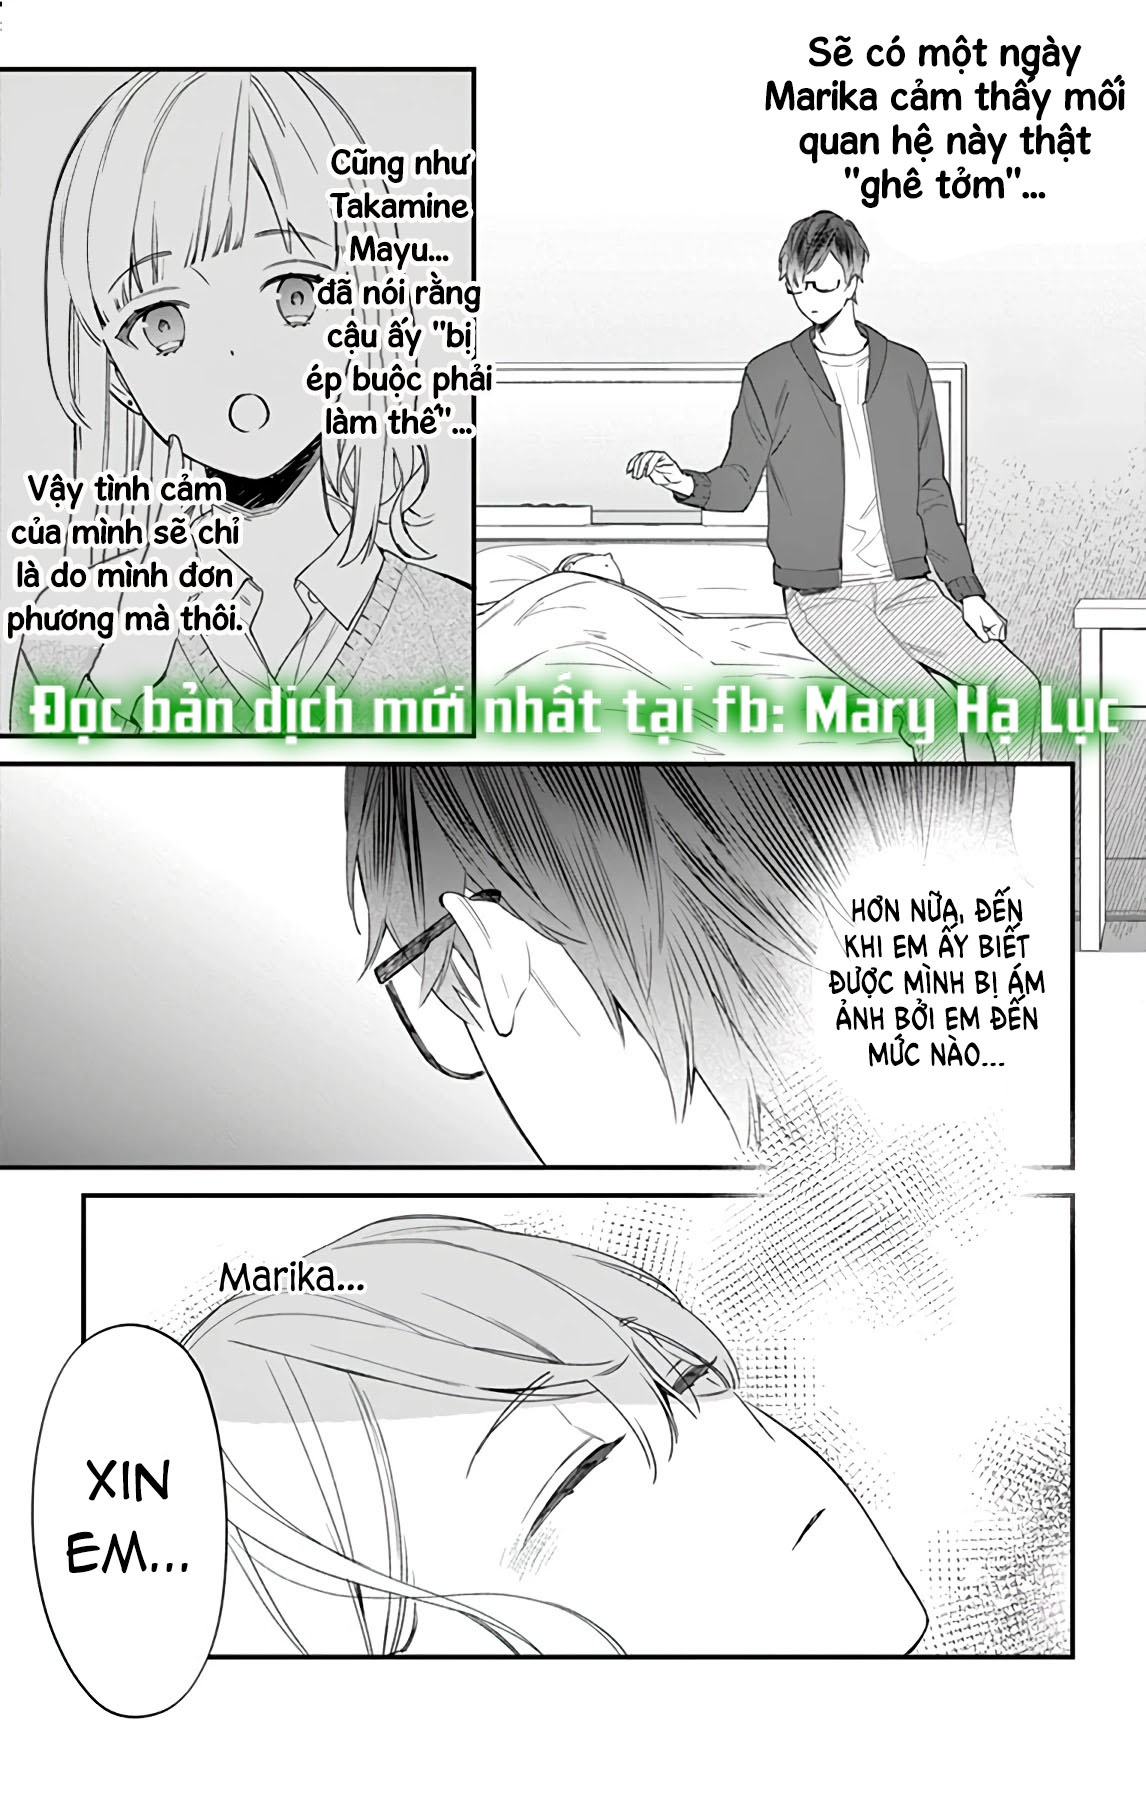 [18+] Marika-chan Và Anh Chàng Nô Lệ Tình Yêu Dịu Dàng